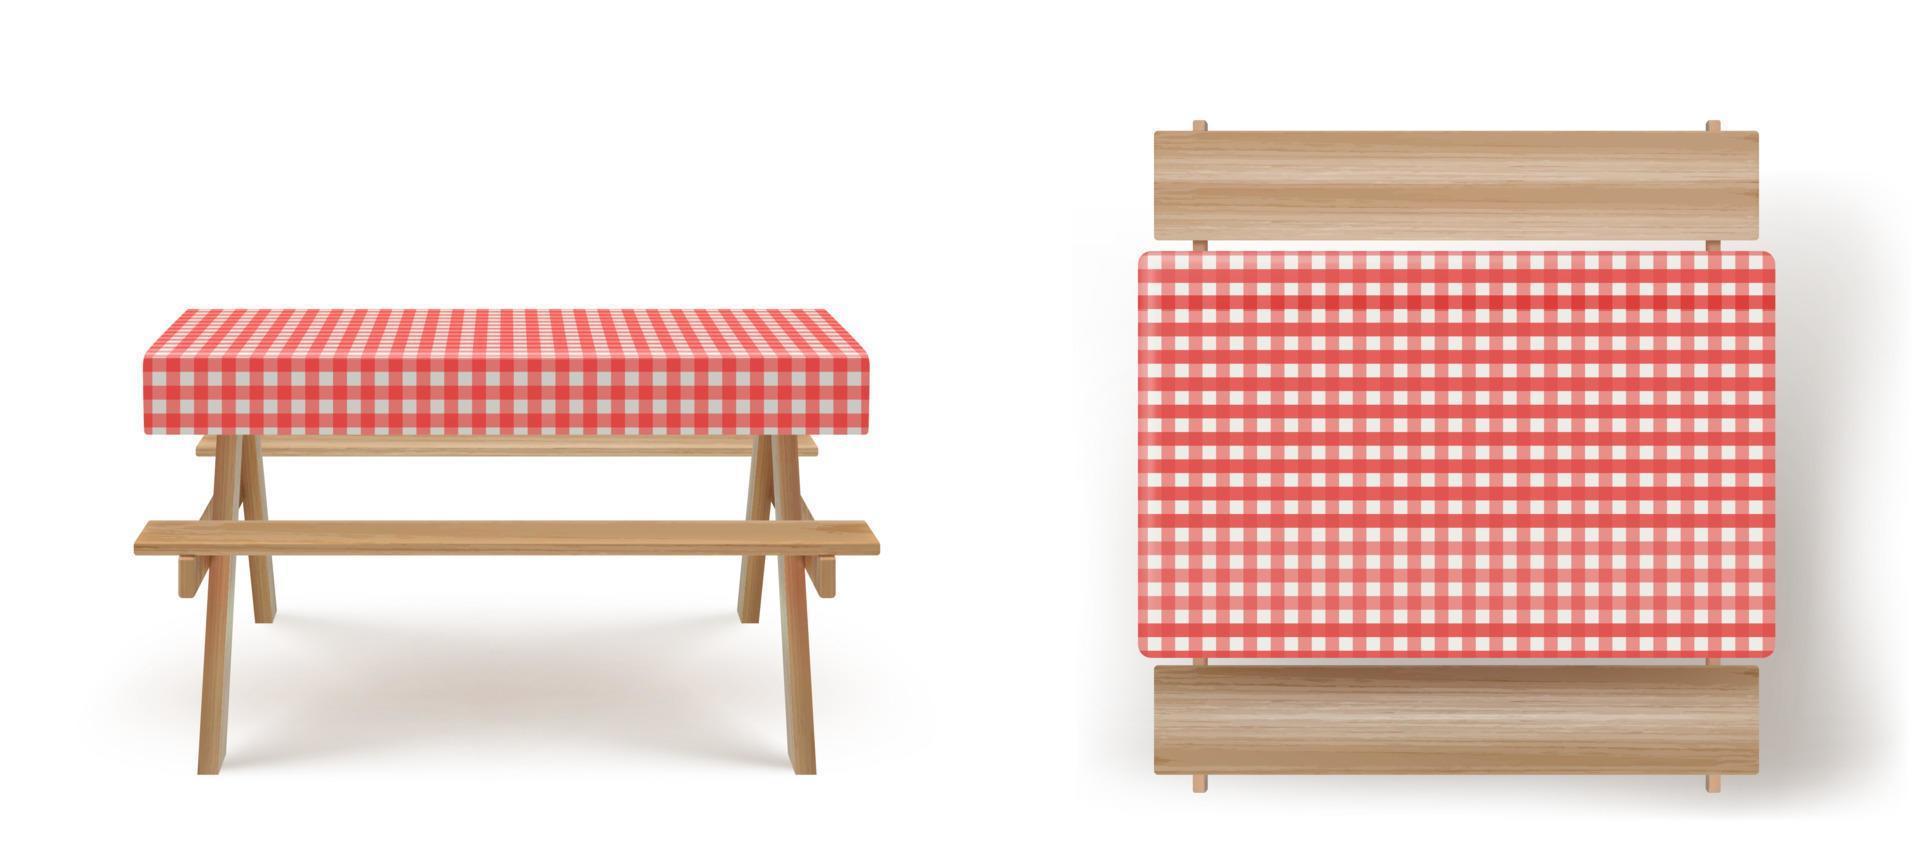 mesa de picnic de madera con bancos mantel vector